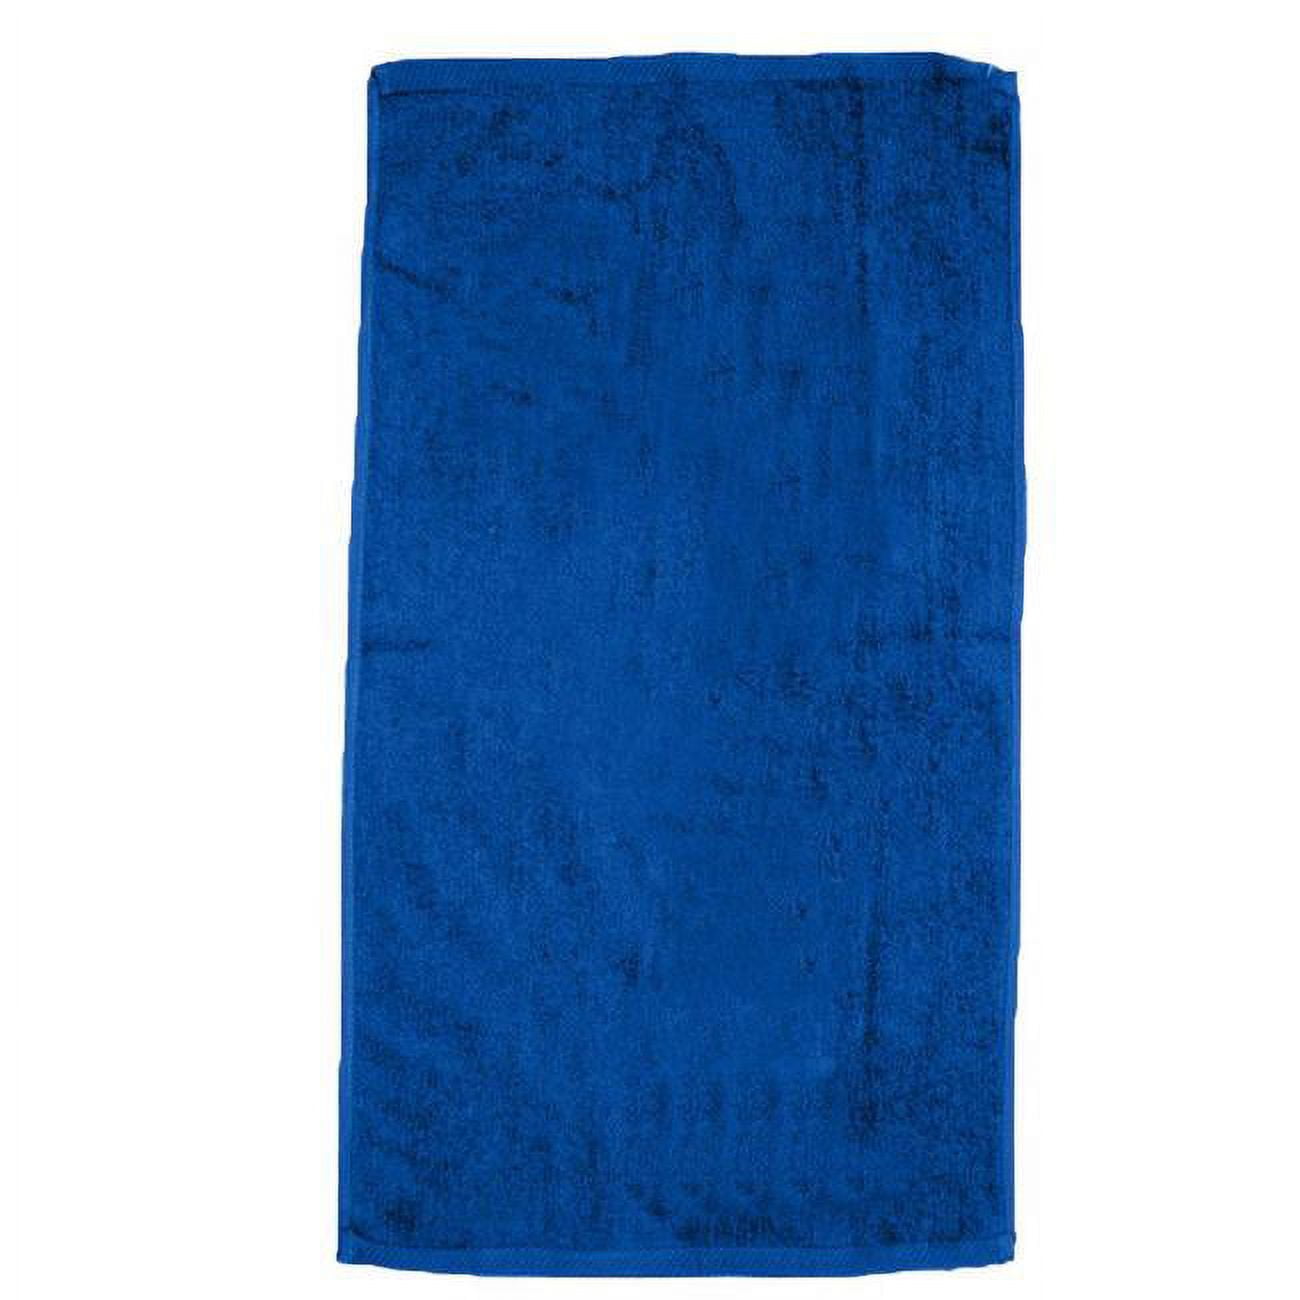 2327077 30 X 60 In. Ddi Beach Towels, Royal Blue - Case Of 12